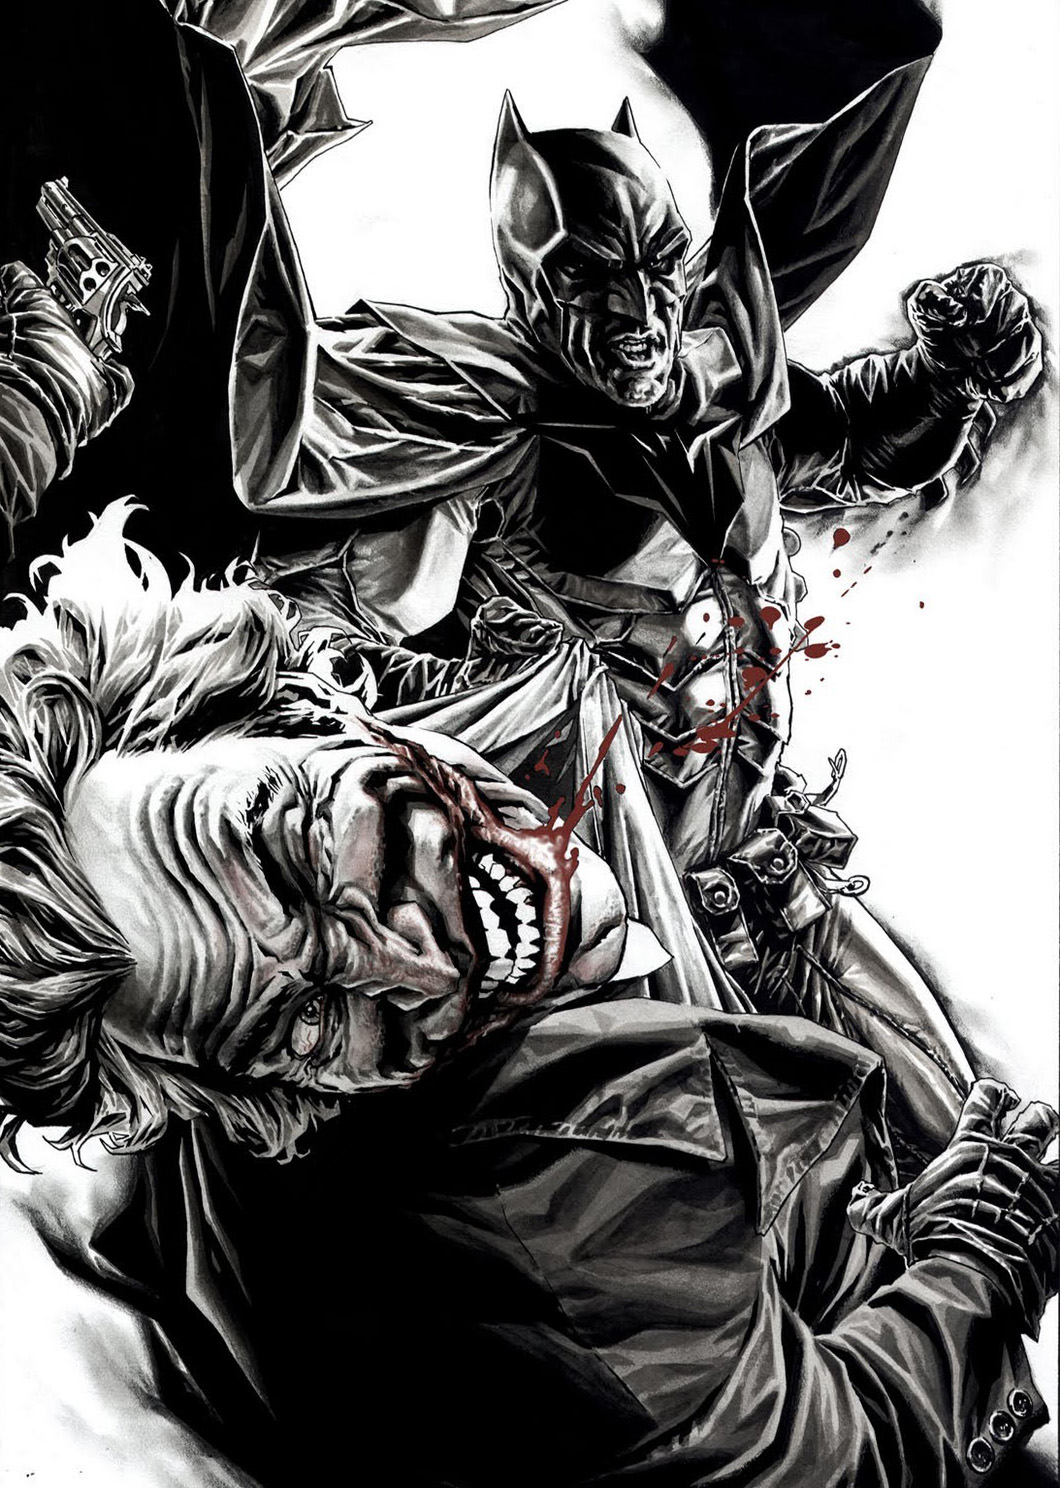 dc comics wallpaper hd,batman,fictional character,superhero,supervillain,illustration